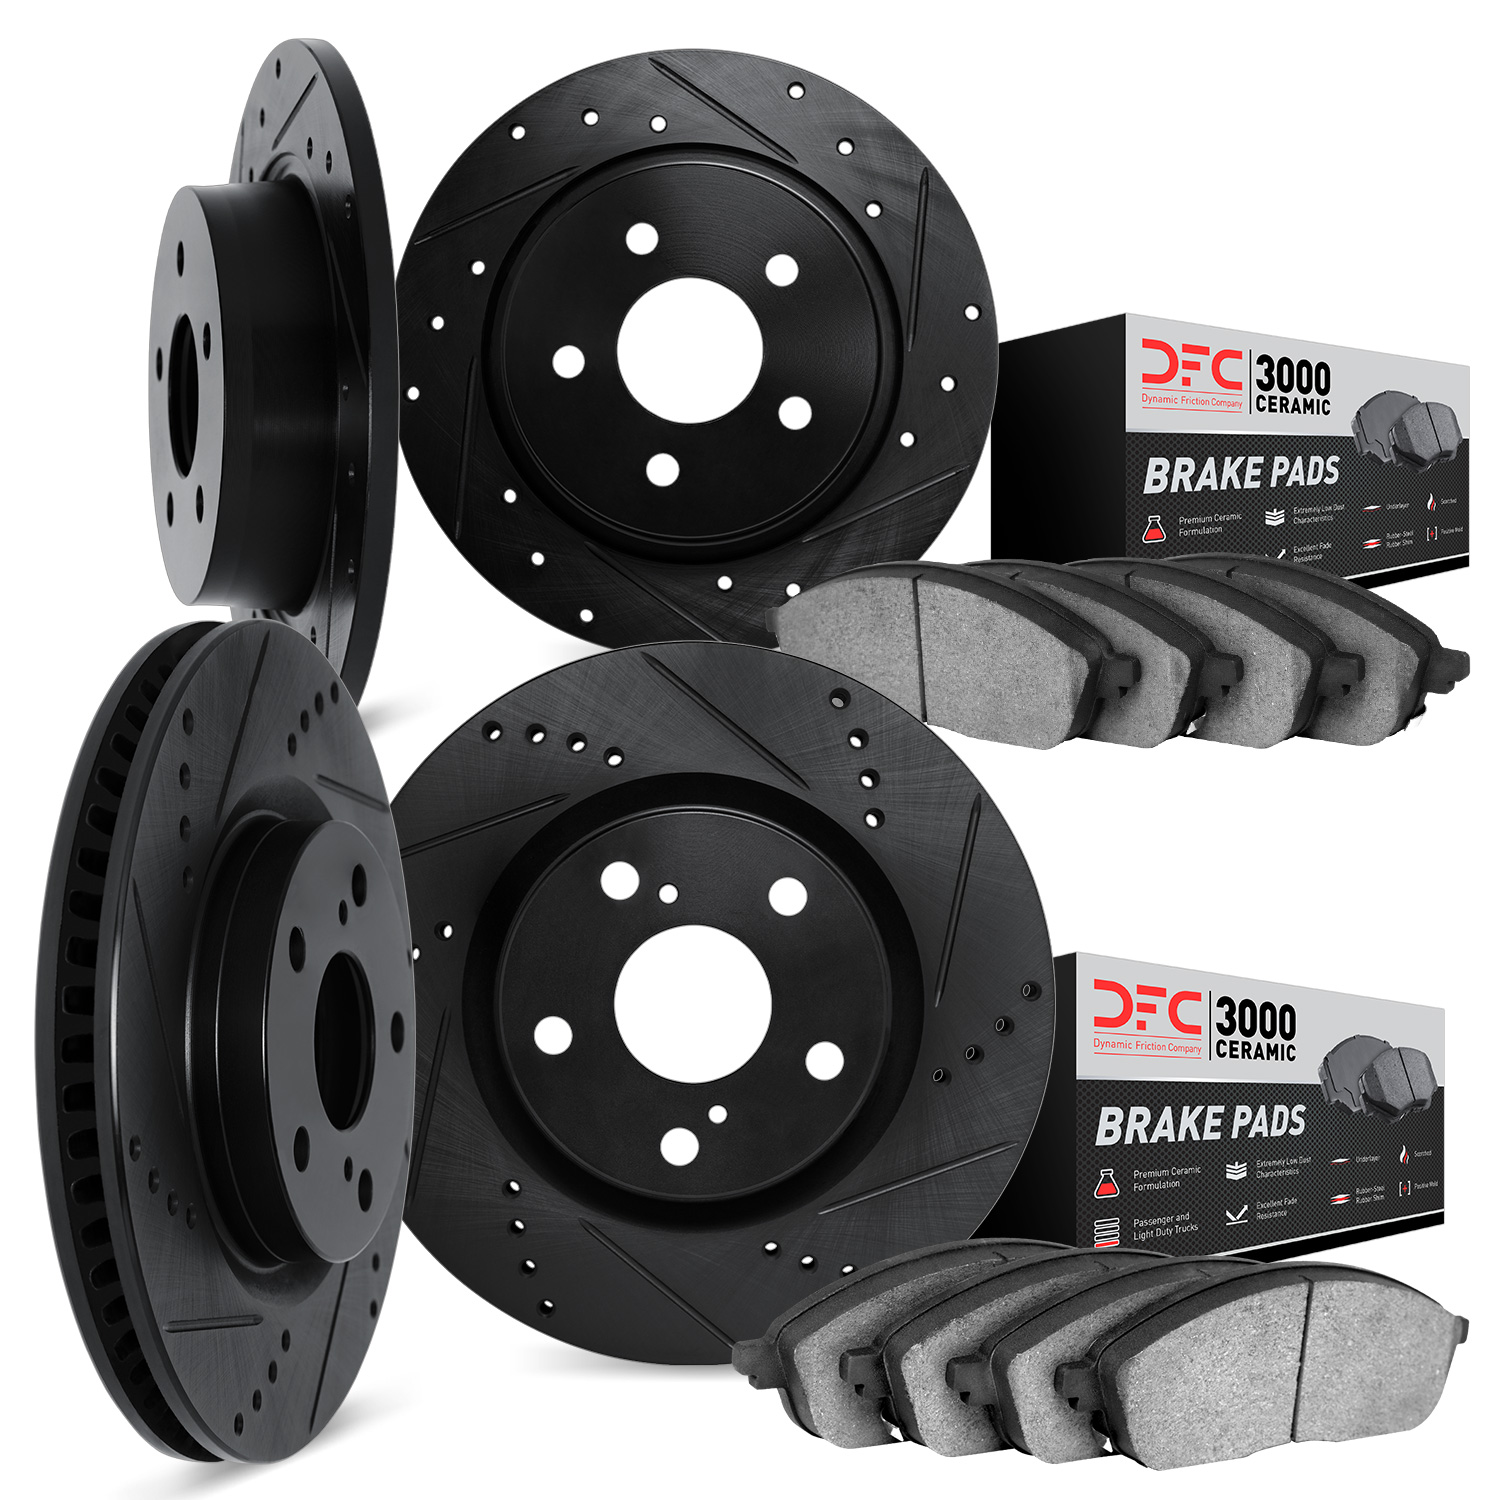 8304-03086 Drilled/Slotted Brake Rotors with 3000-Series Ceramic Brake Pads Kit [Black], Fits Select Kia/Hyundai/Genesis, Positi